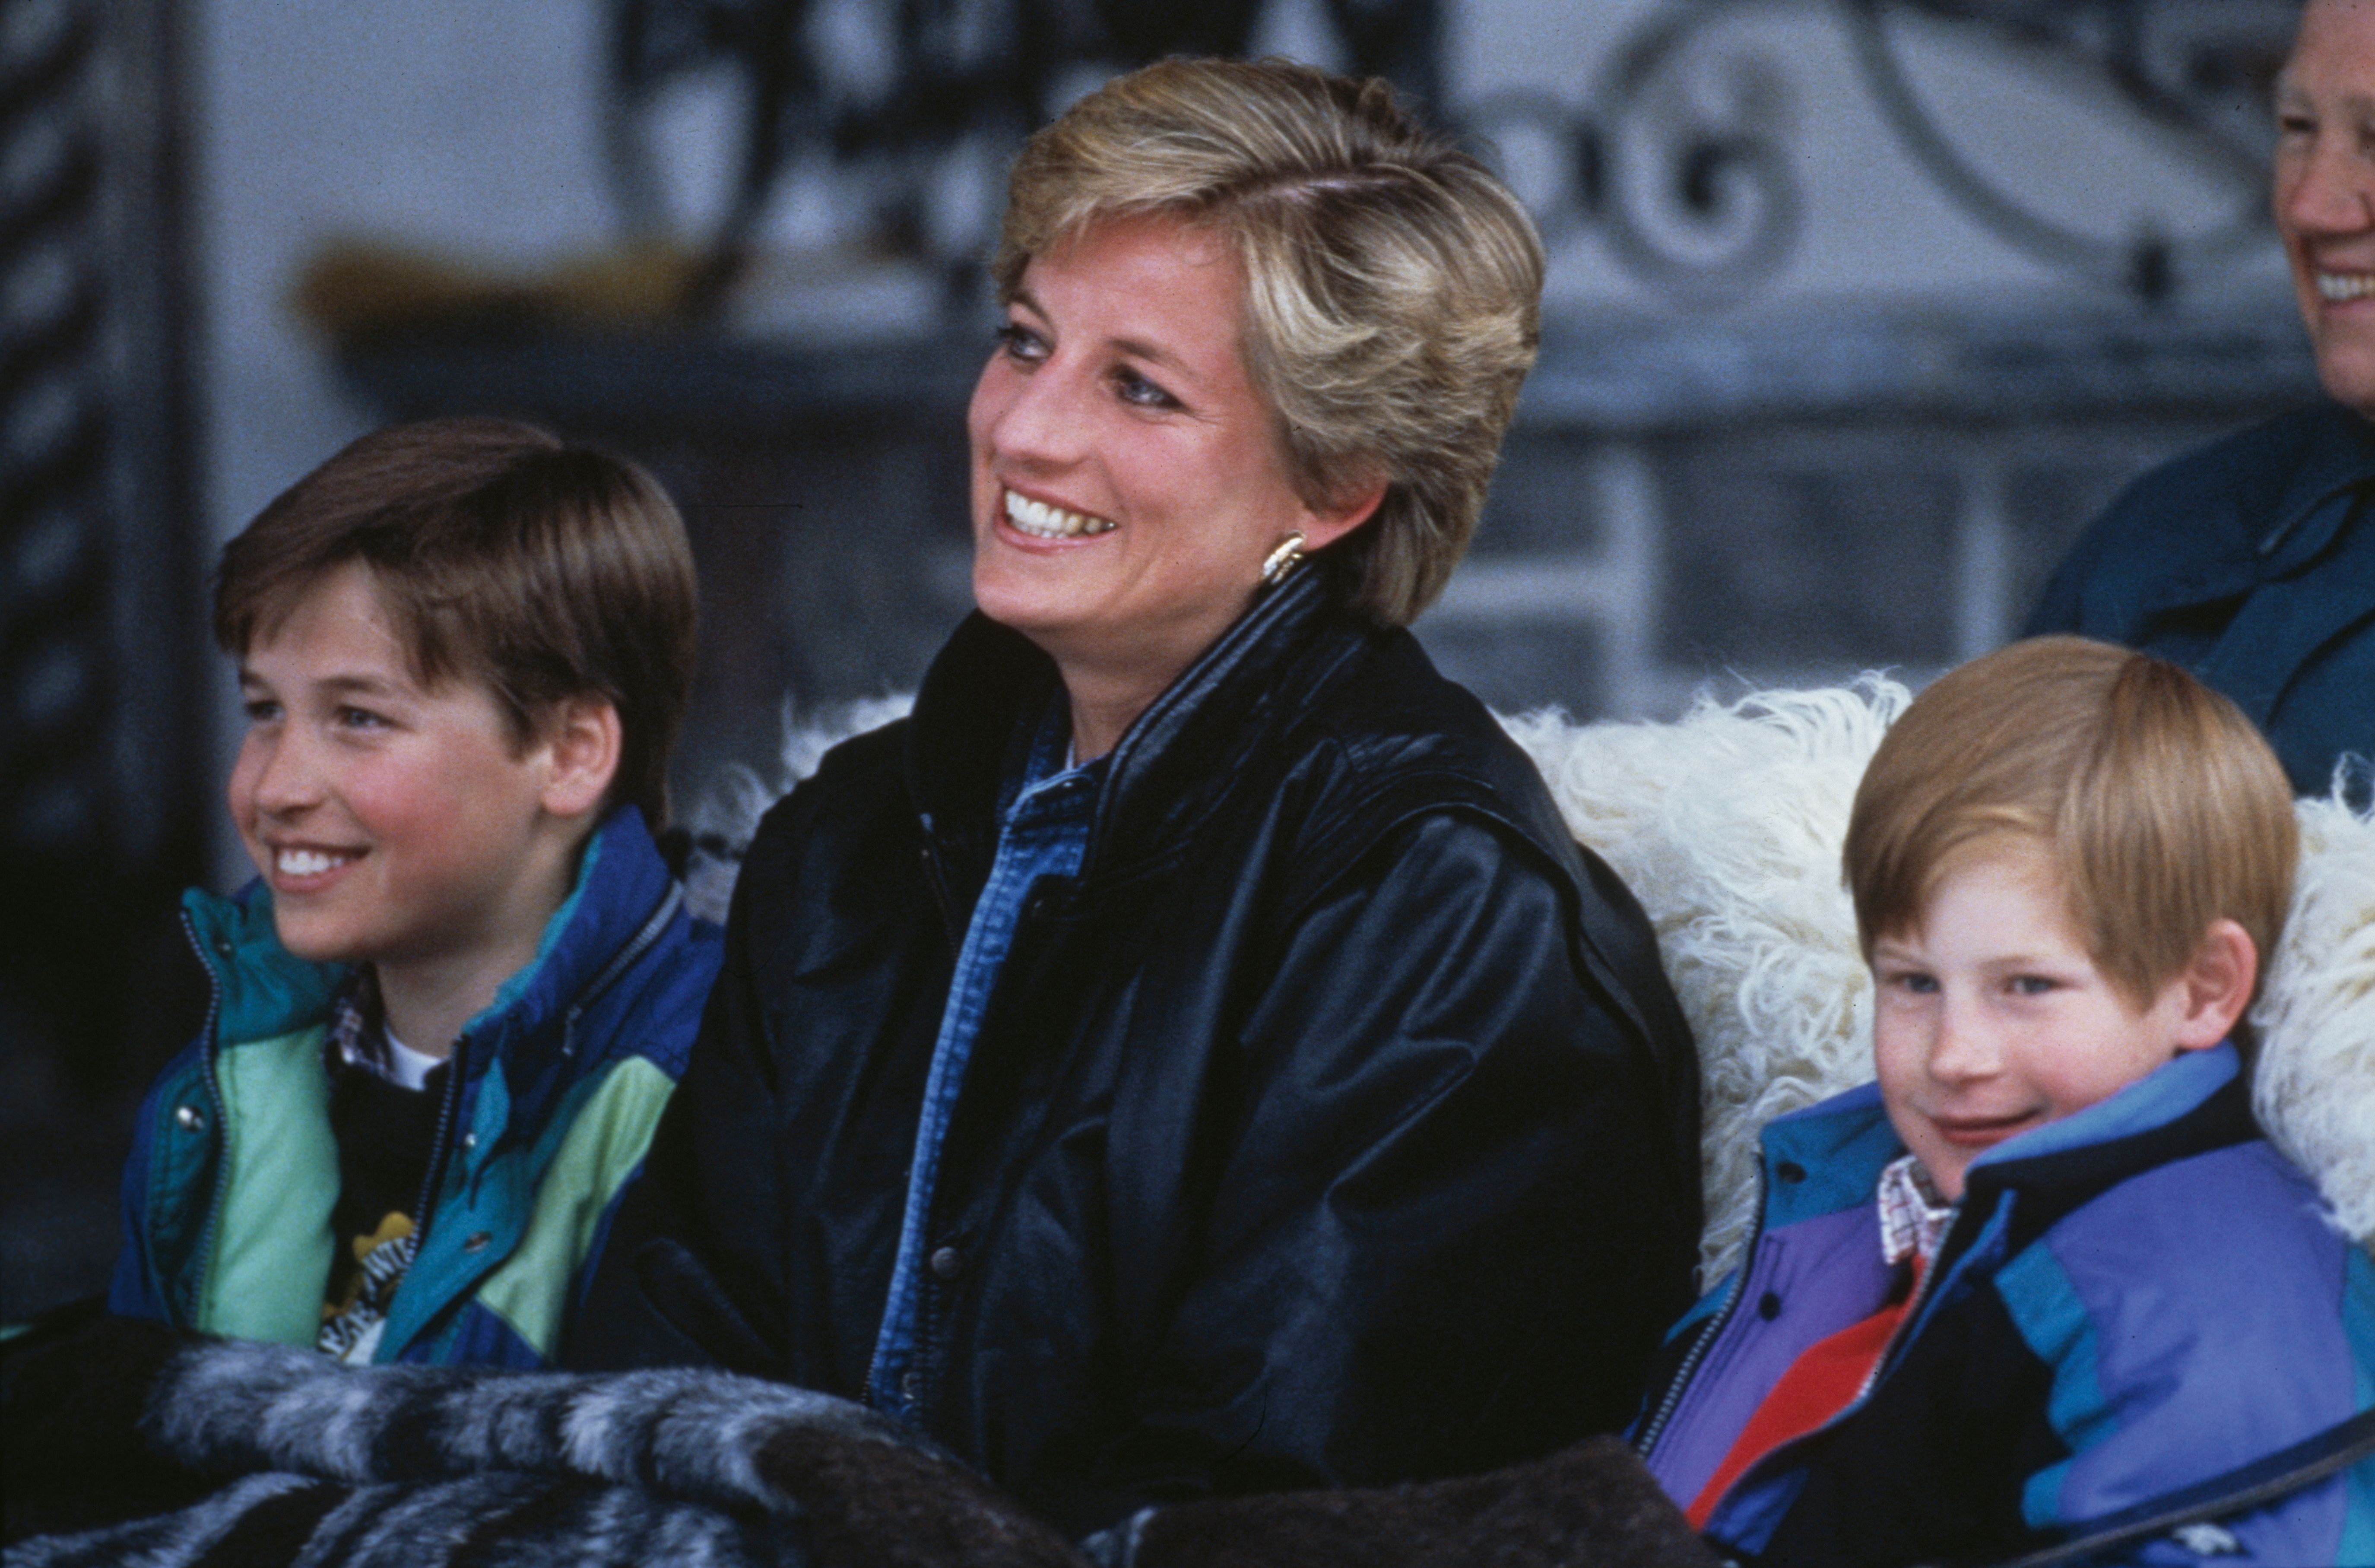 Princesa Diana y príncipes William y Harry en marzo de 1993 en Lech, Austria. | Foto: Getty Images